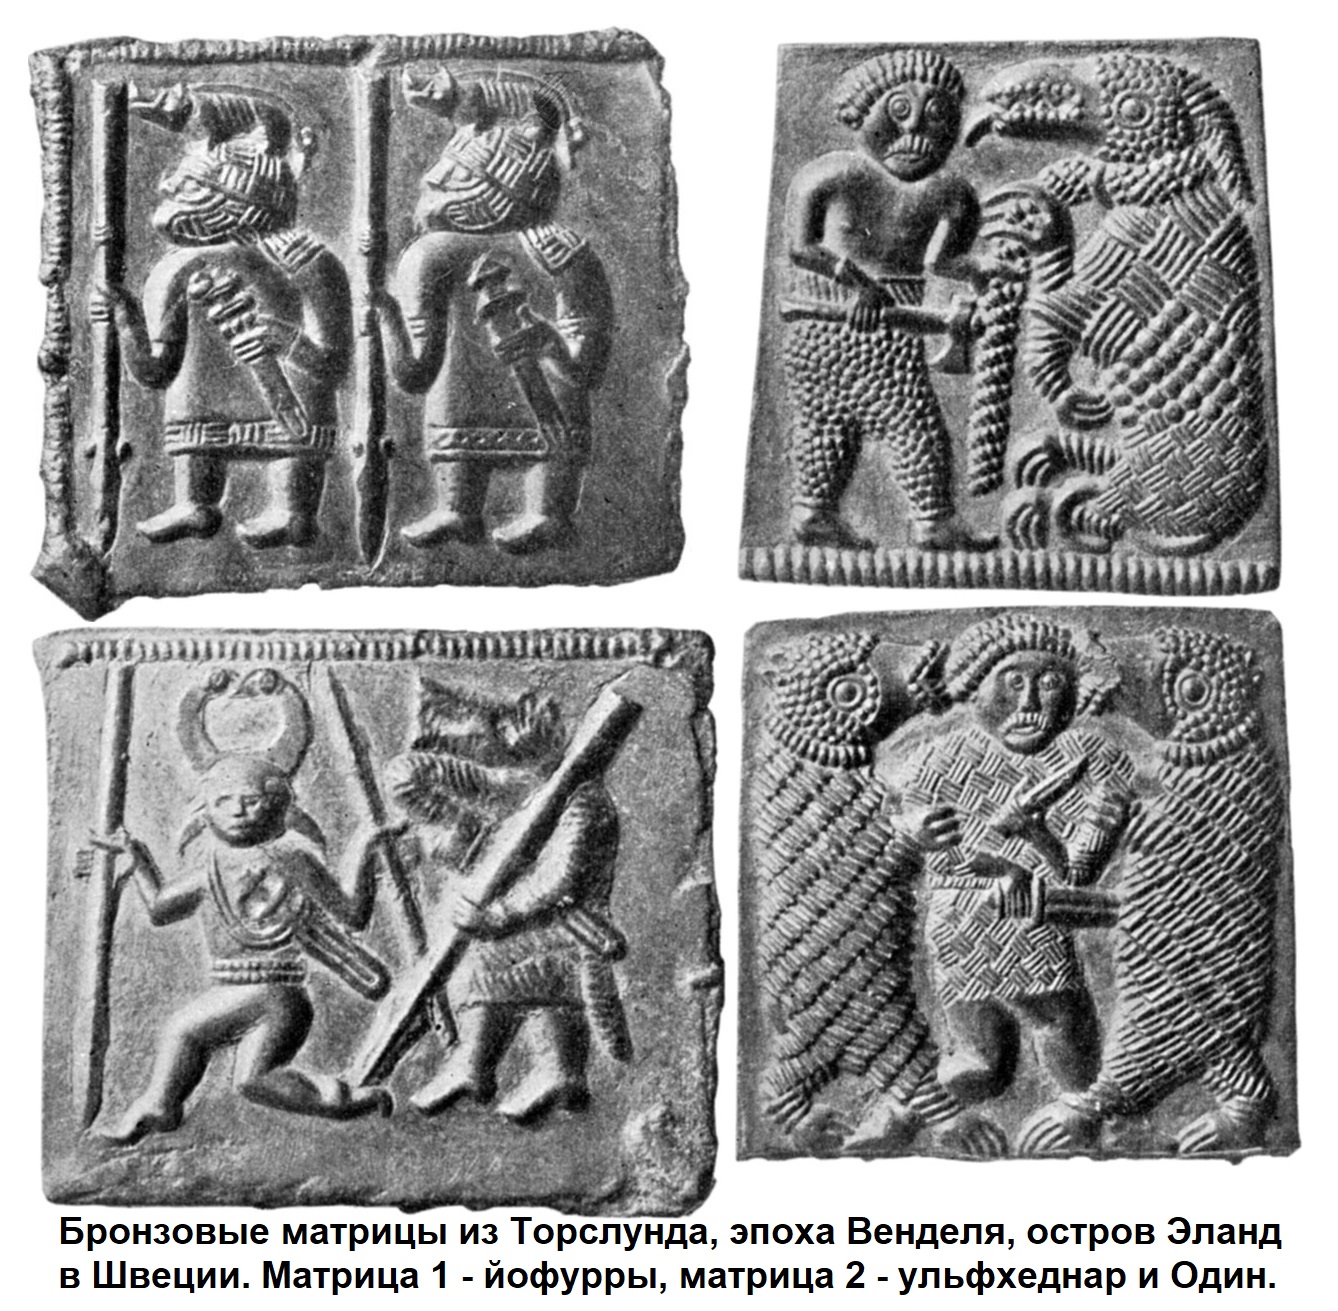 Четыре матрицы из Торслунда, эпоха Венделя, остров Эланд в Швеции, ульфхеднар и йофурры